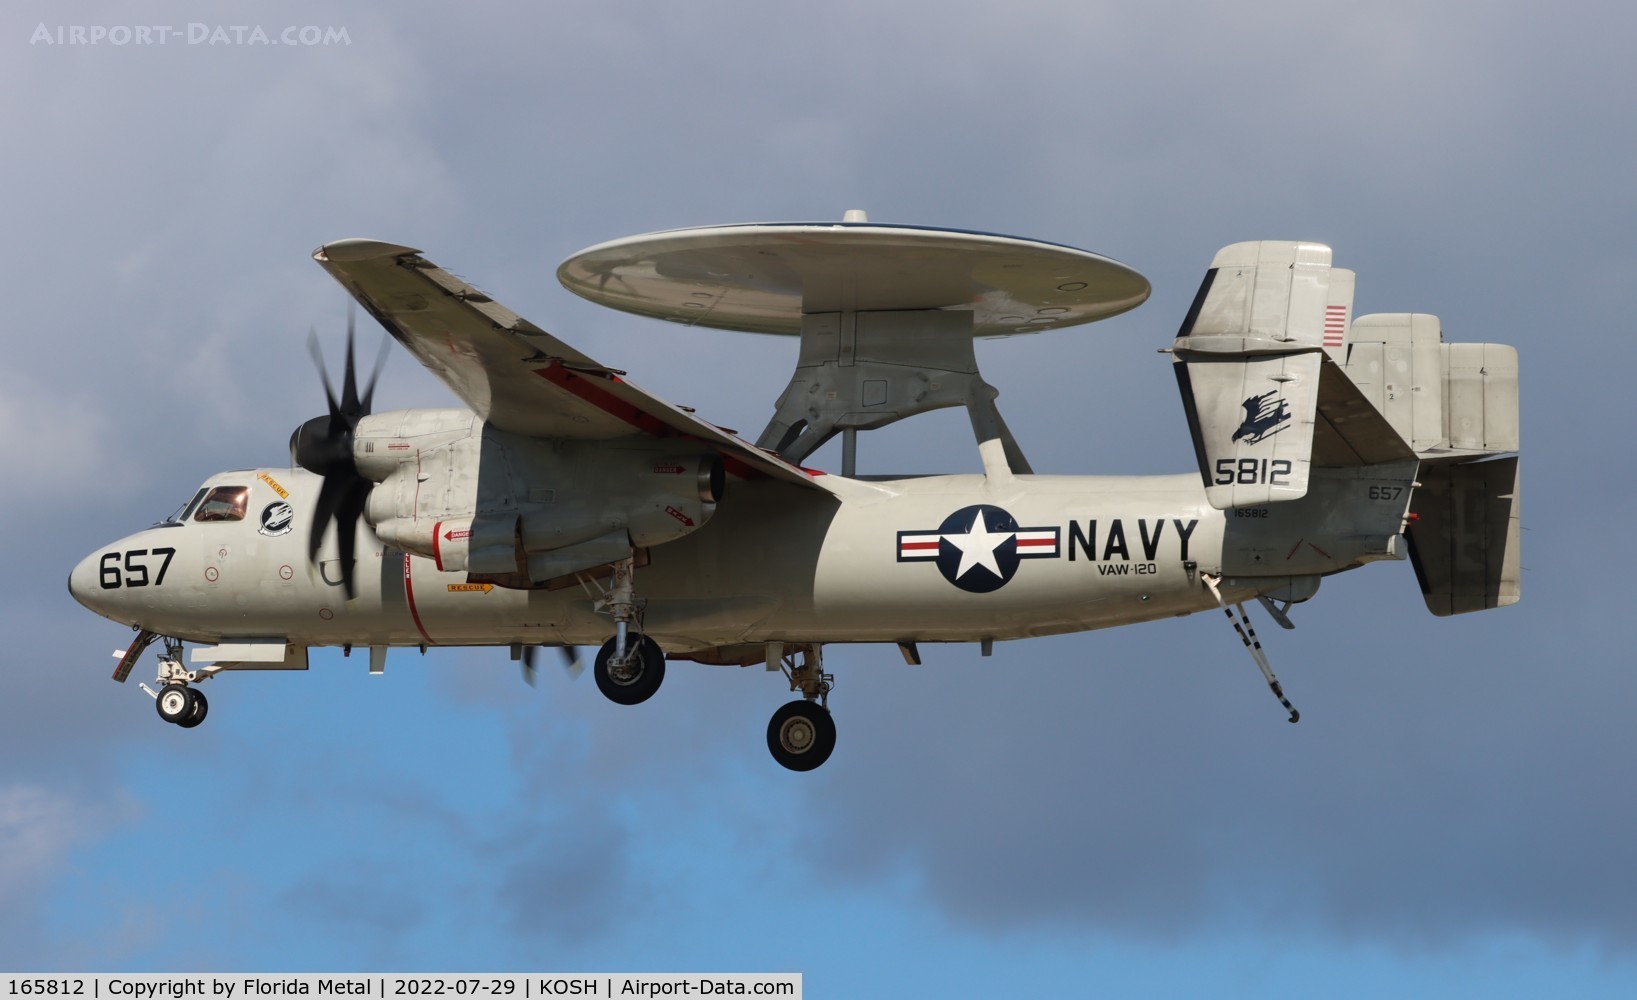 165812, Northrop Grumman E-2C Hawkeye 2000 C/N A183, E-2C zx